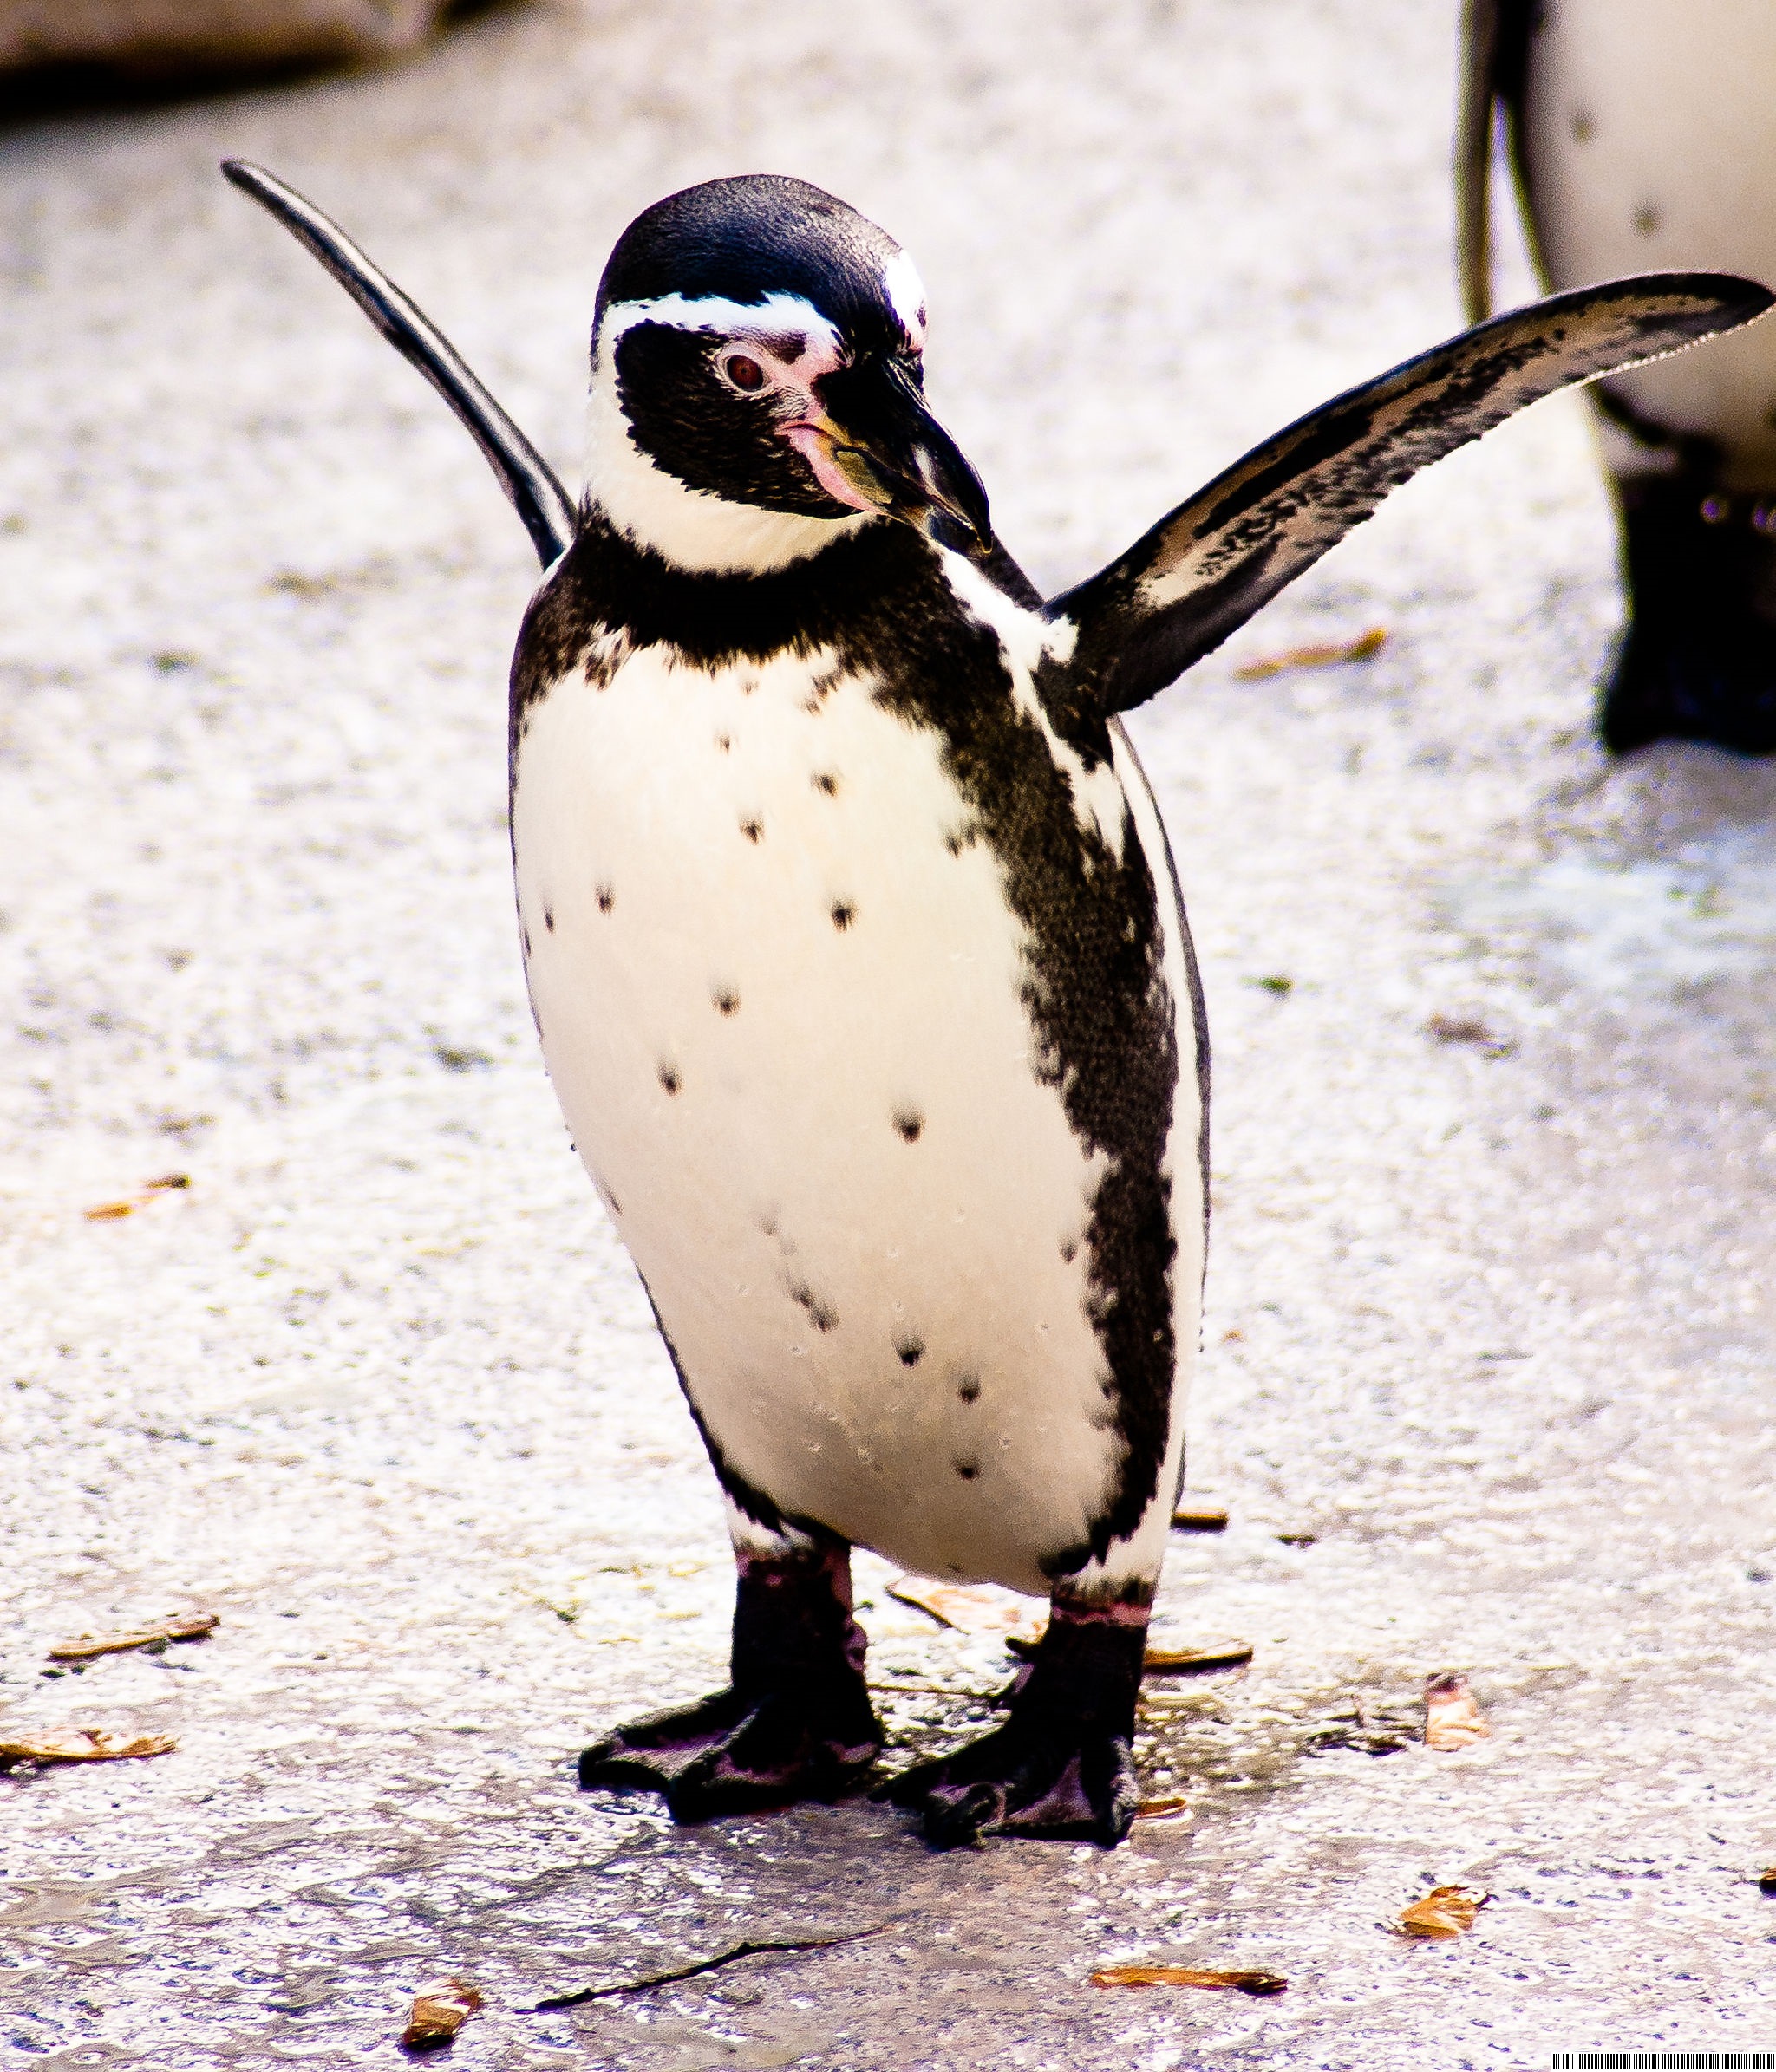 penguin.jpg